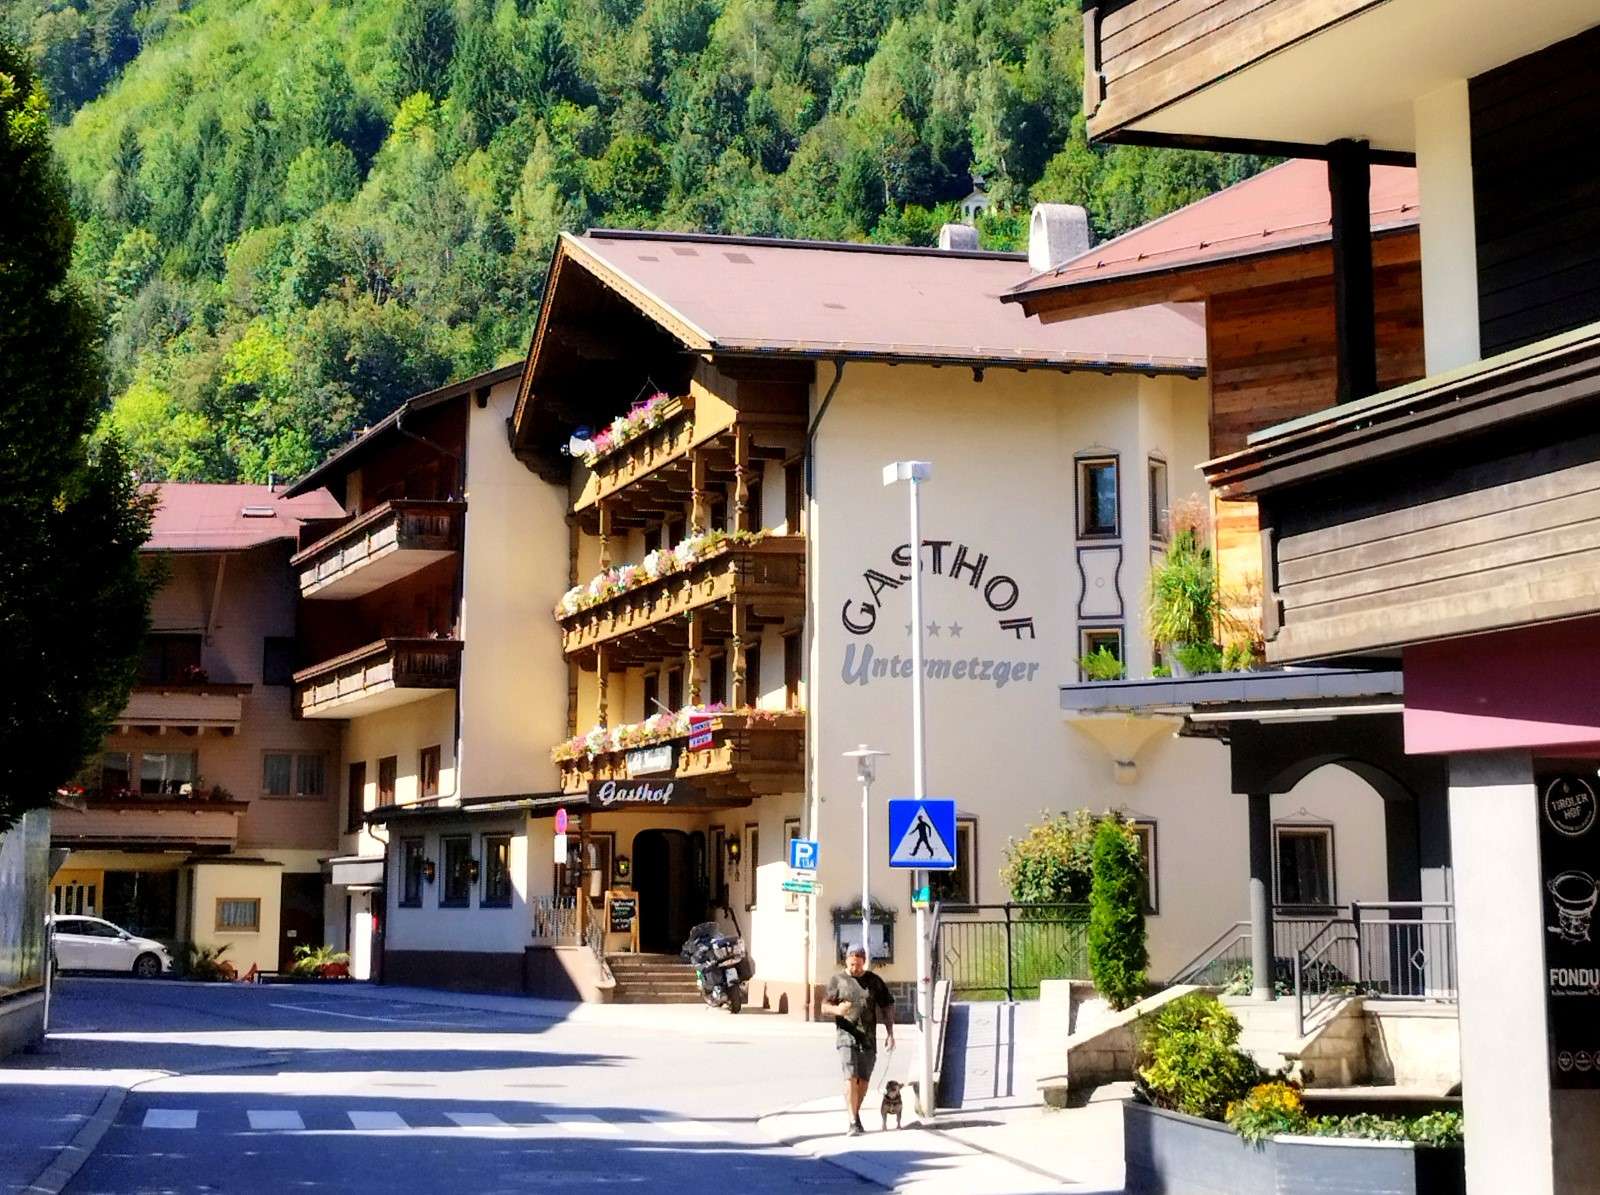 Ξενώνας στο Zell am Ziller (Τυρόλο, Αυστρία) παζλ online